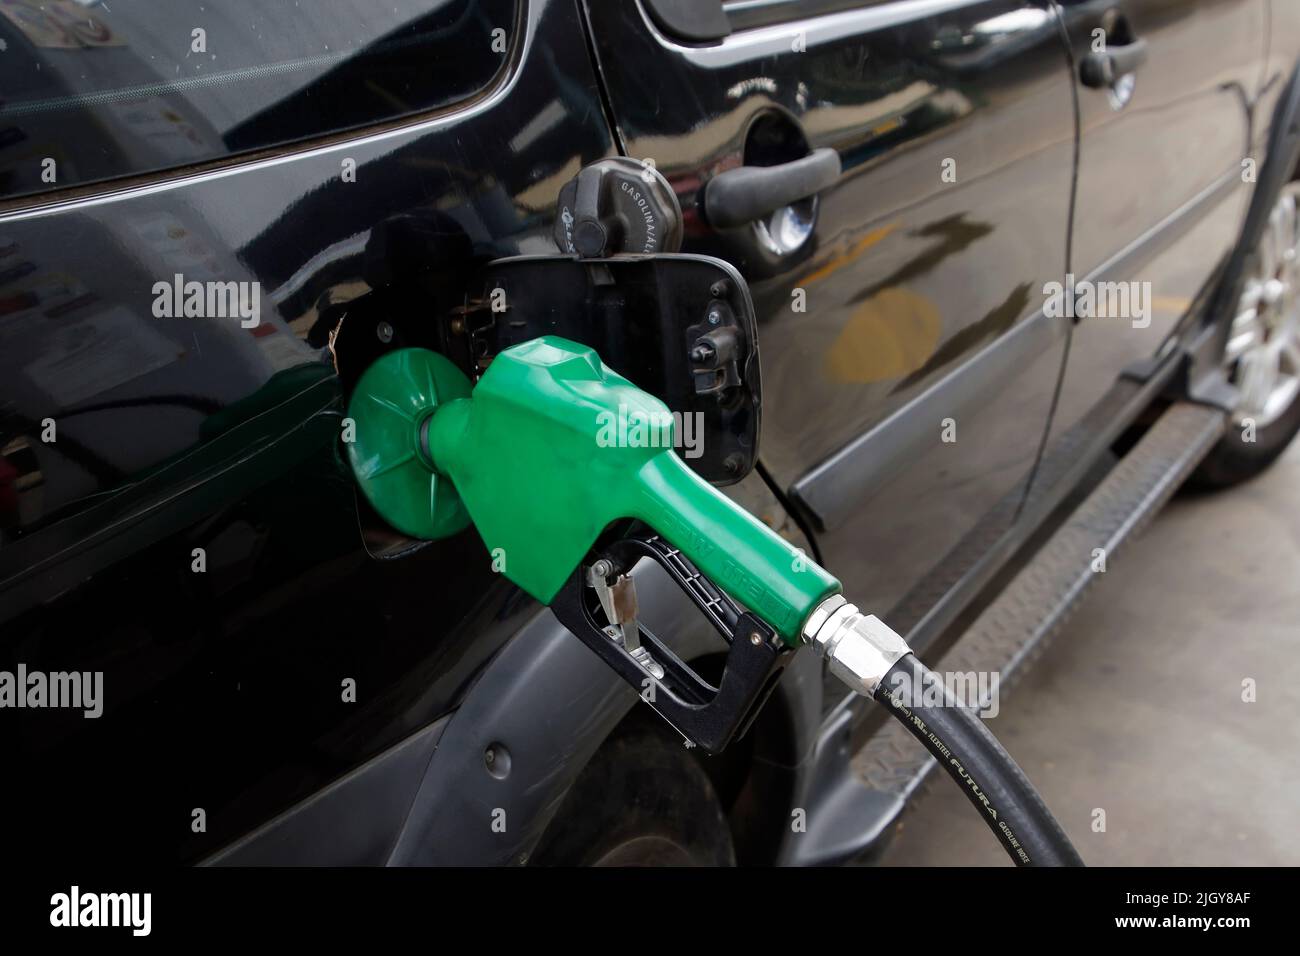 Minas Gerais, Brasil - 30 de marzo de 2022: Gasolina al repostar un vehículo en una gasolinera Foto de stock